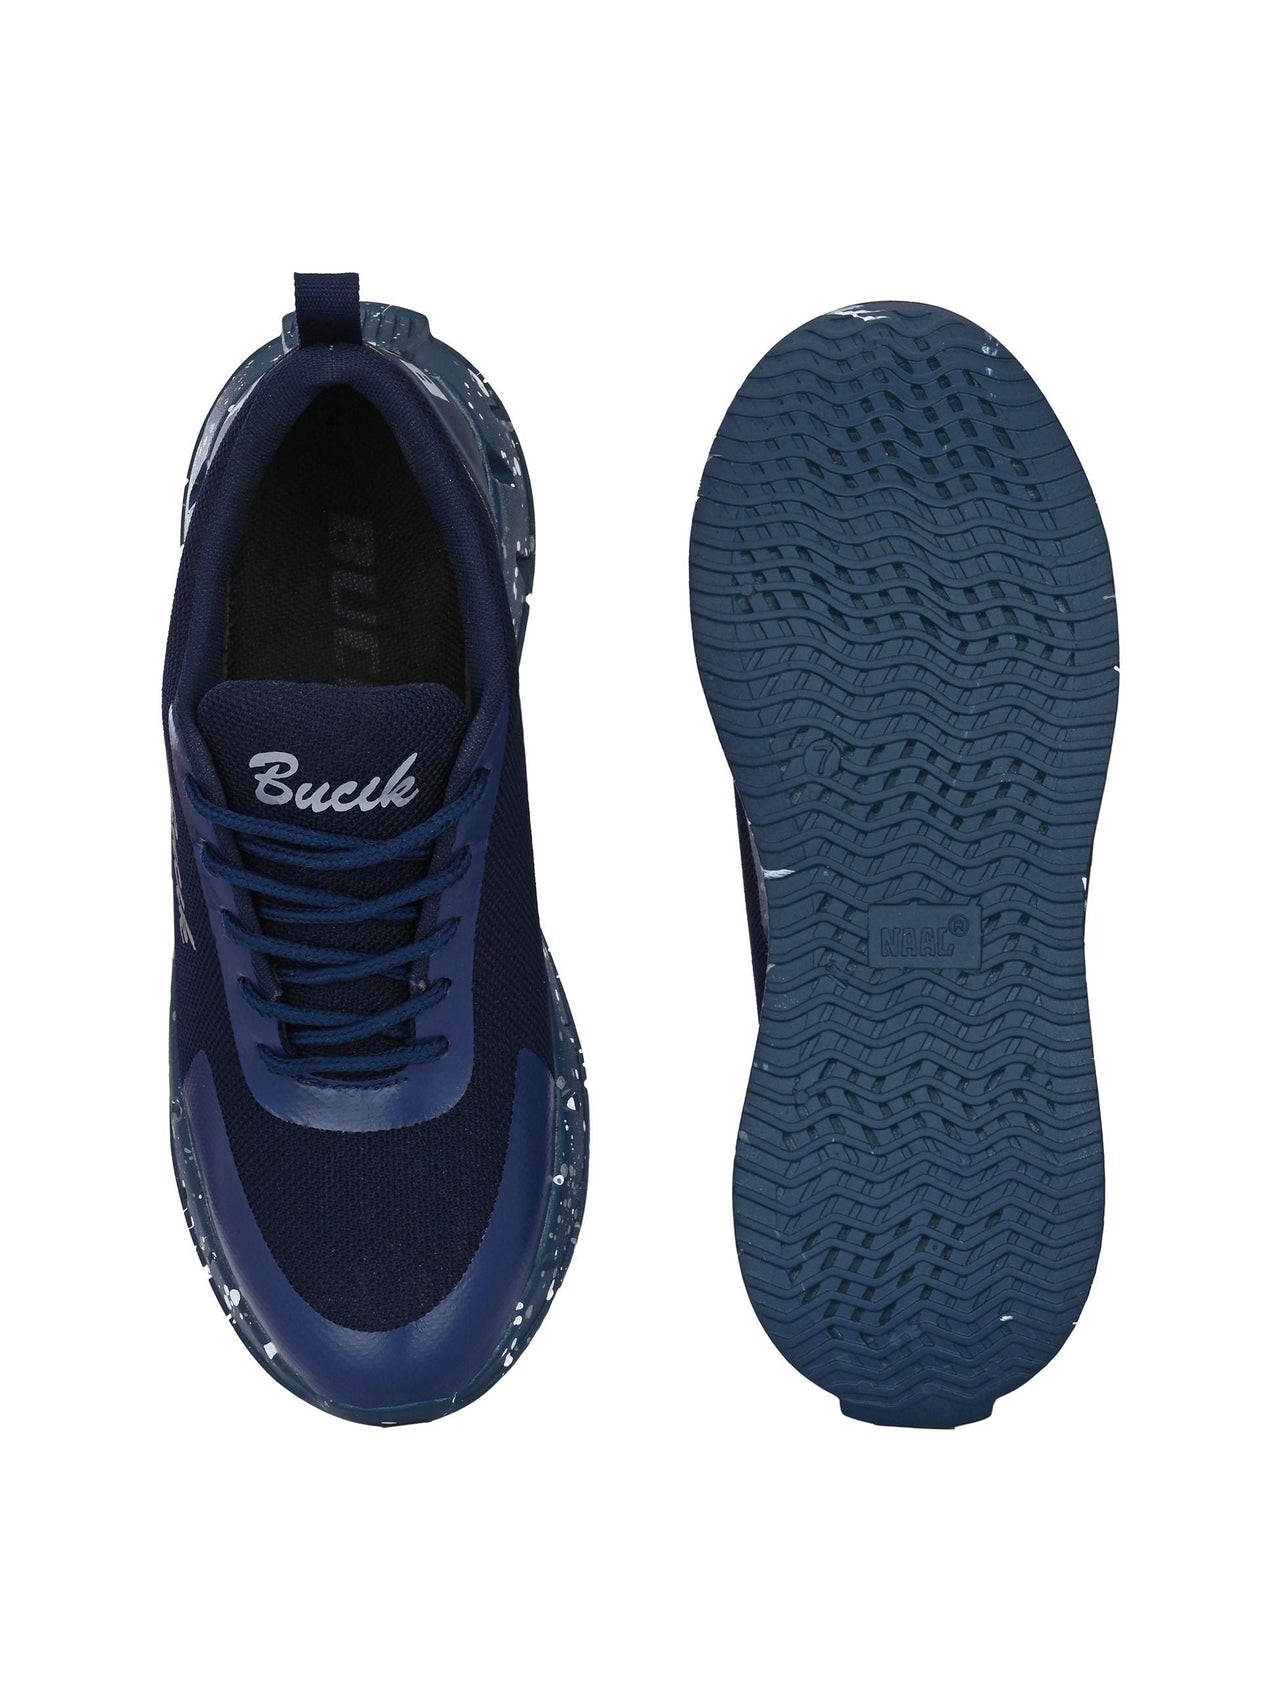 Bucik Men's Blue Synthetic Leather Lace-Up Sport Shoe